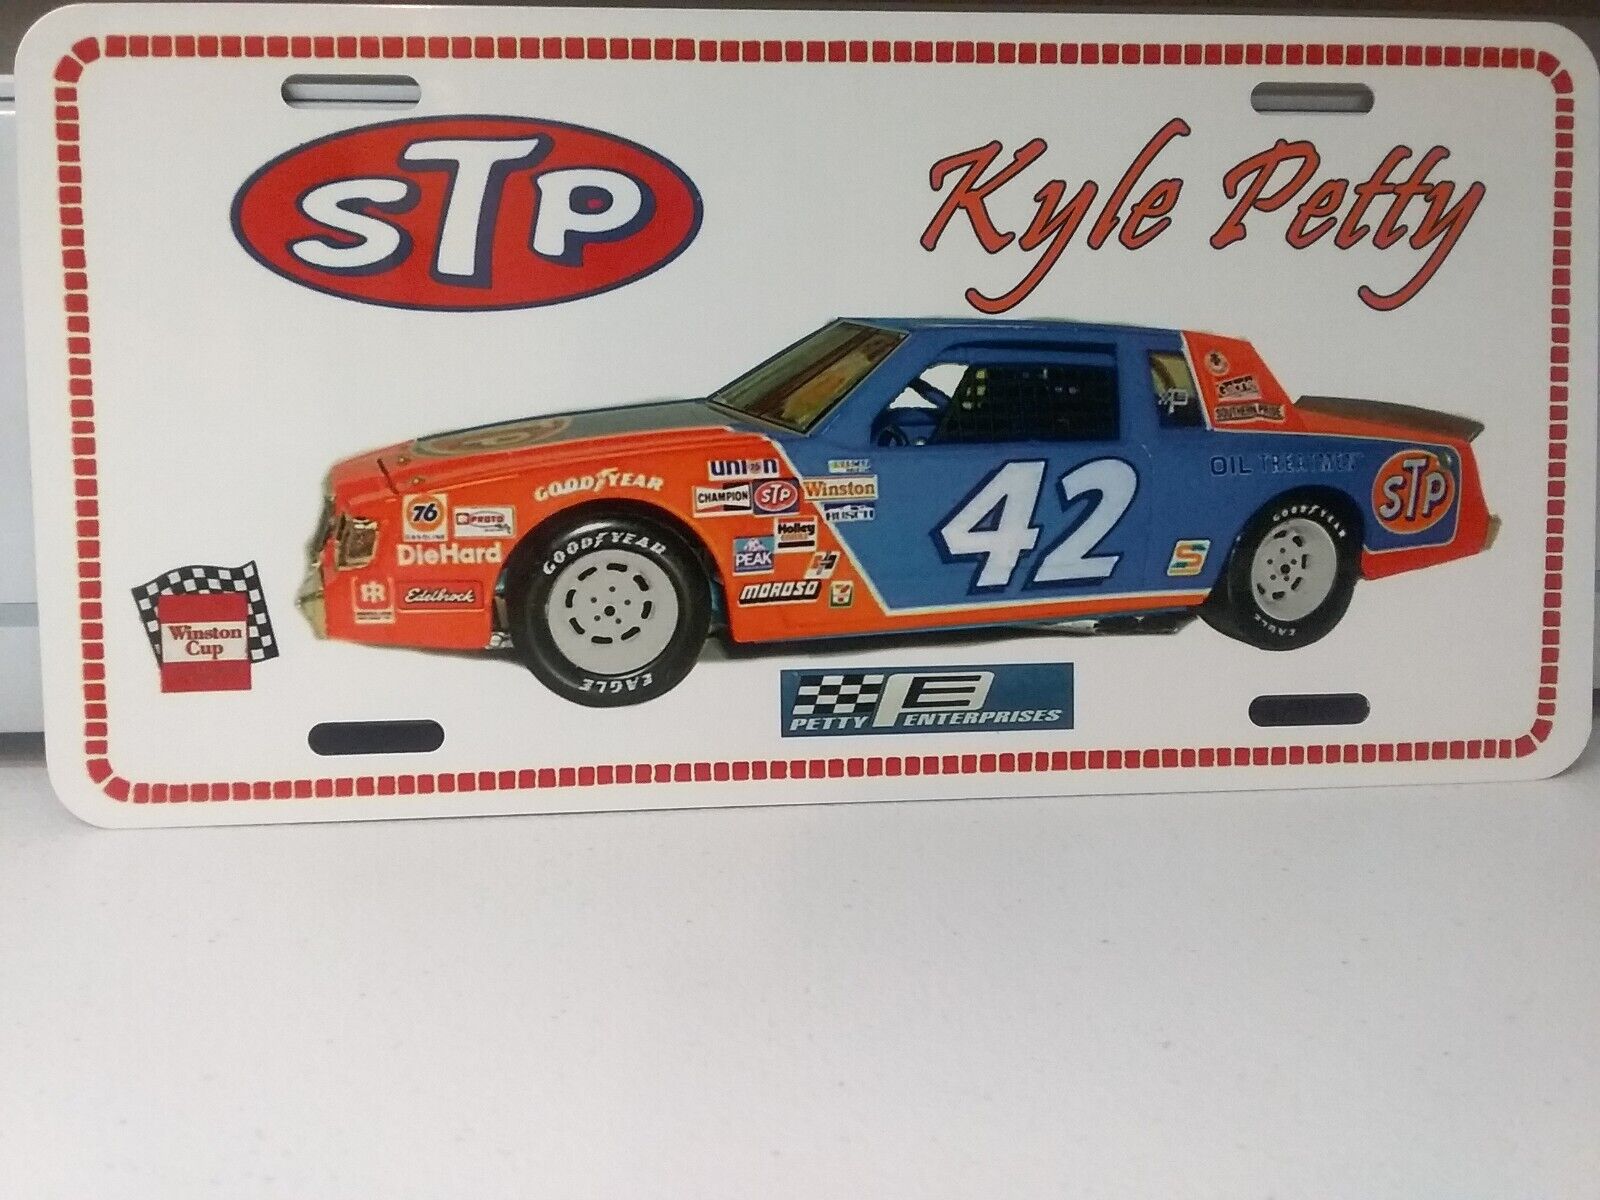 Vintage looking STP Racing Team 42 Kyle  Petty - License Plate  1981 